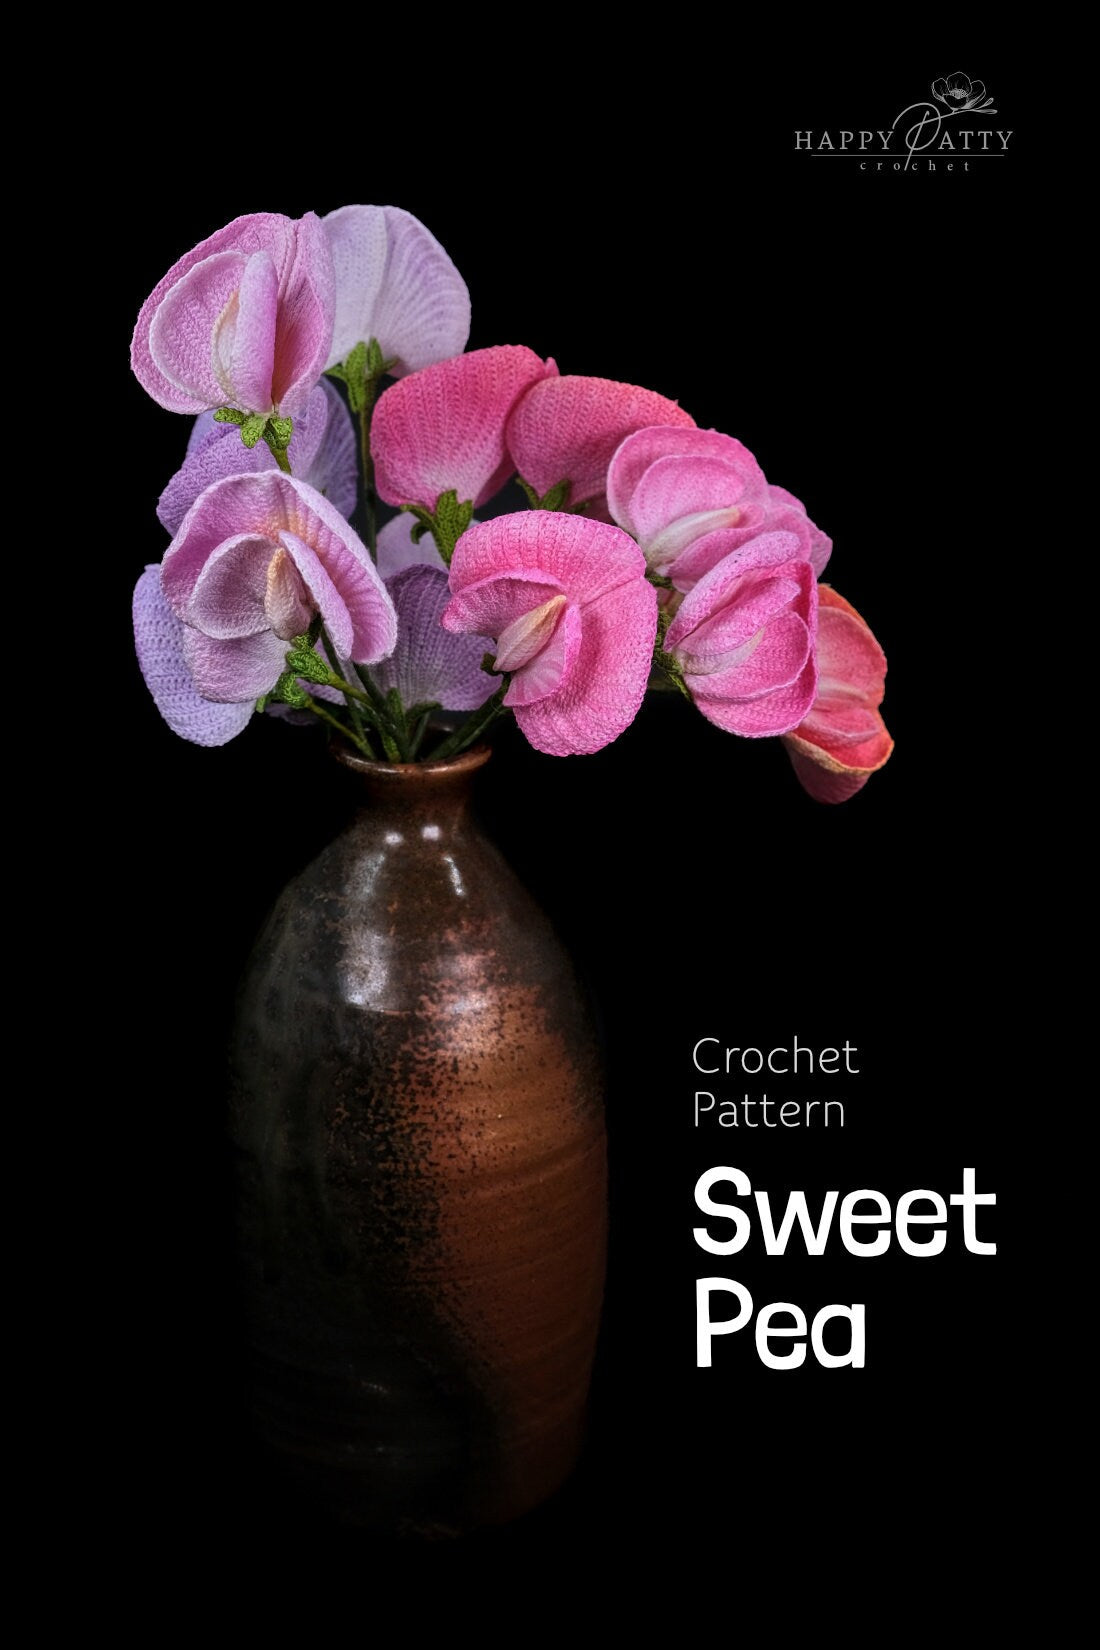 Crochet Sweet Pea Flower Pattern - Crochet Pattern a Sweet Pea Flower